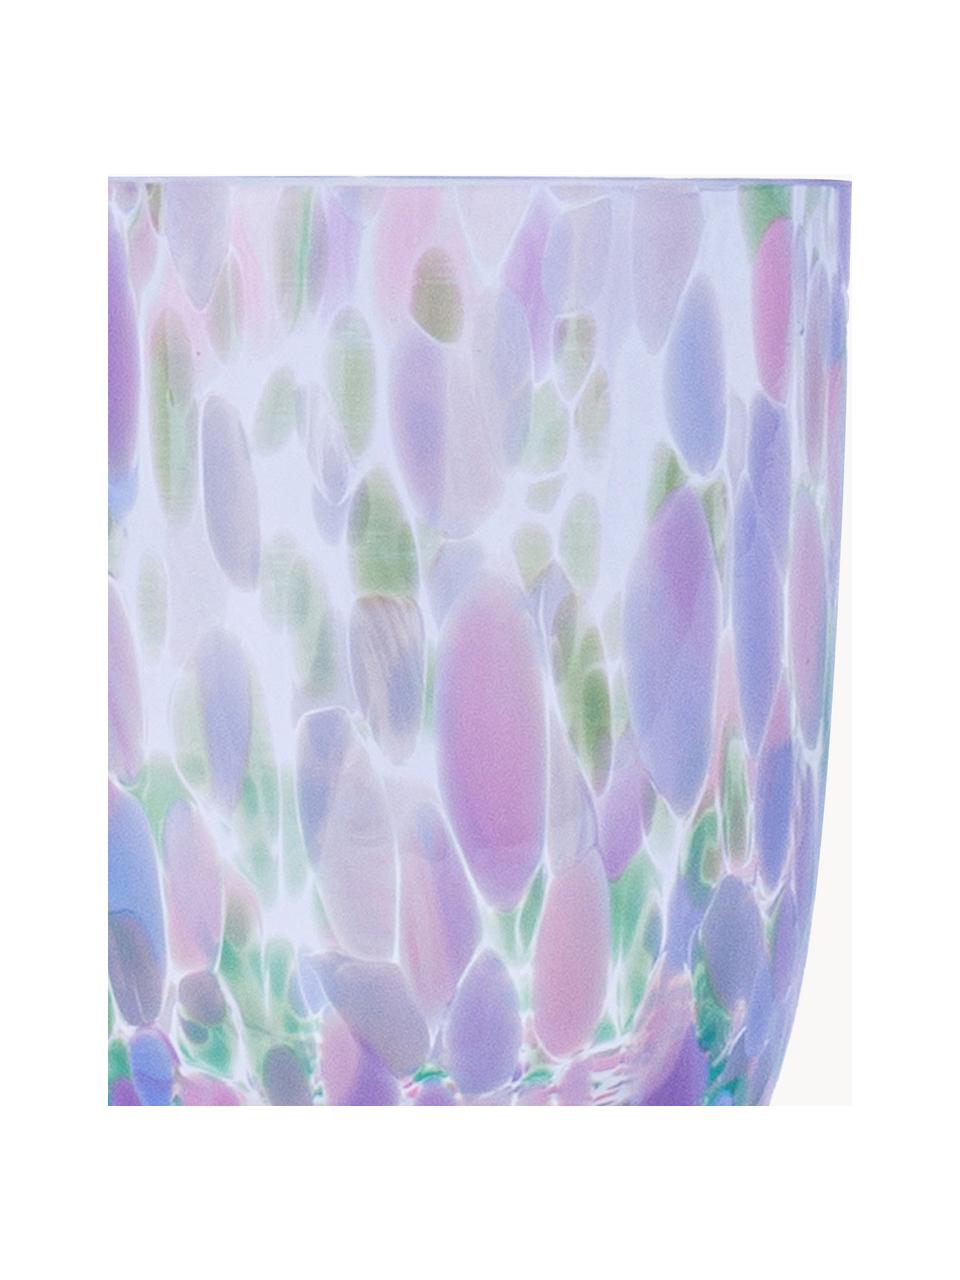 Set de vasos artesanales Big Confetti, 6 uds., Vidrio, Transparente, tonos rosas, azules y verdes, Ø 7 x Al 10 cm, 250 ml